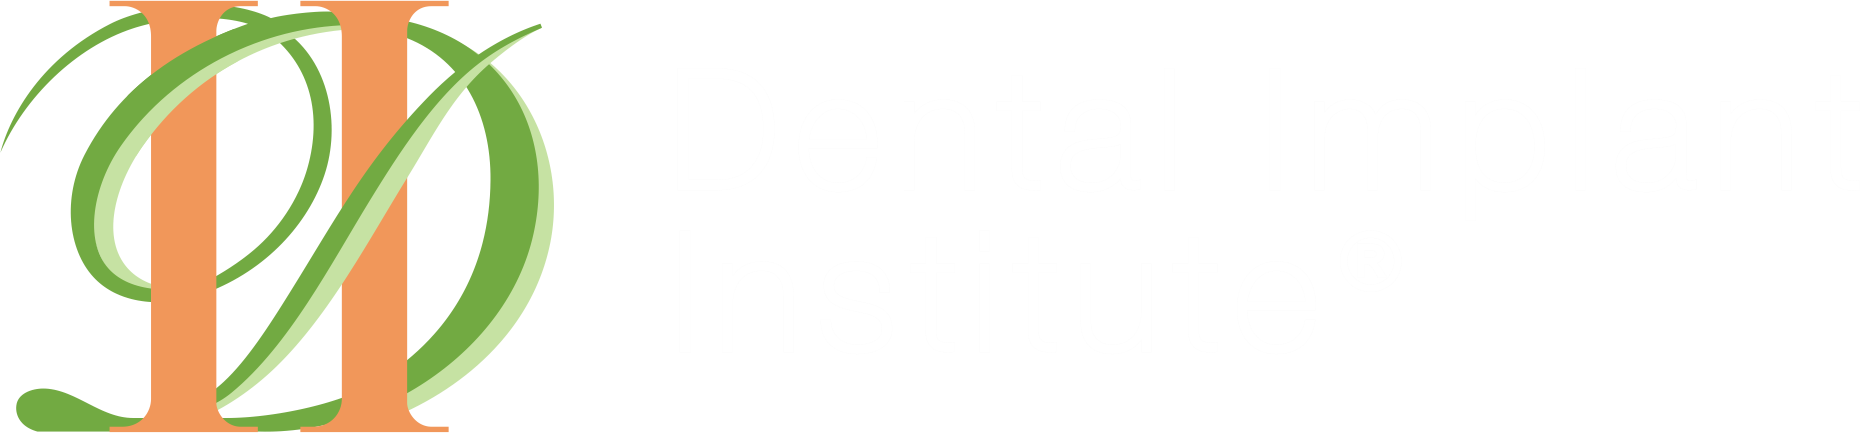 Dental Implant Institute